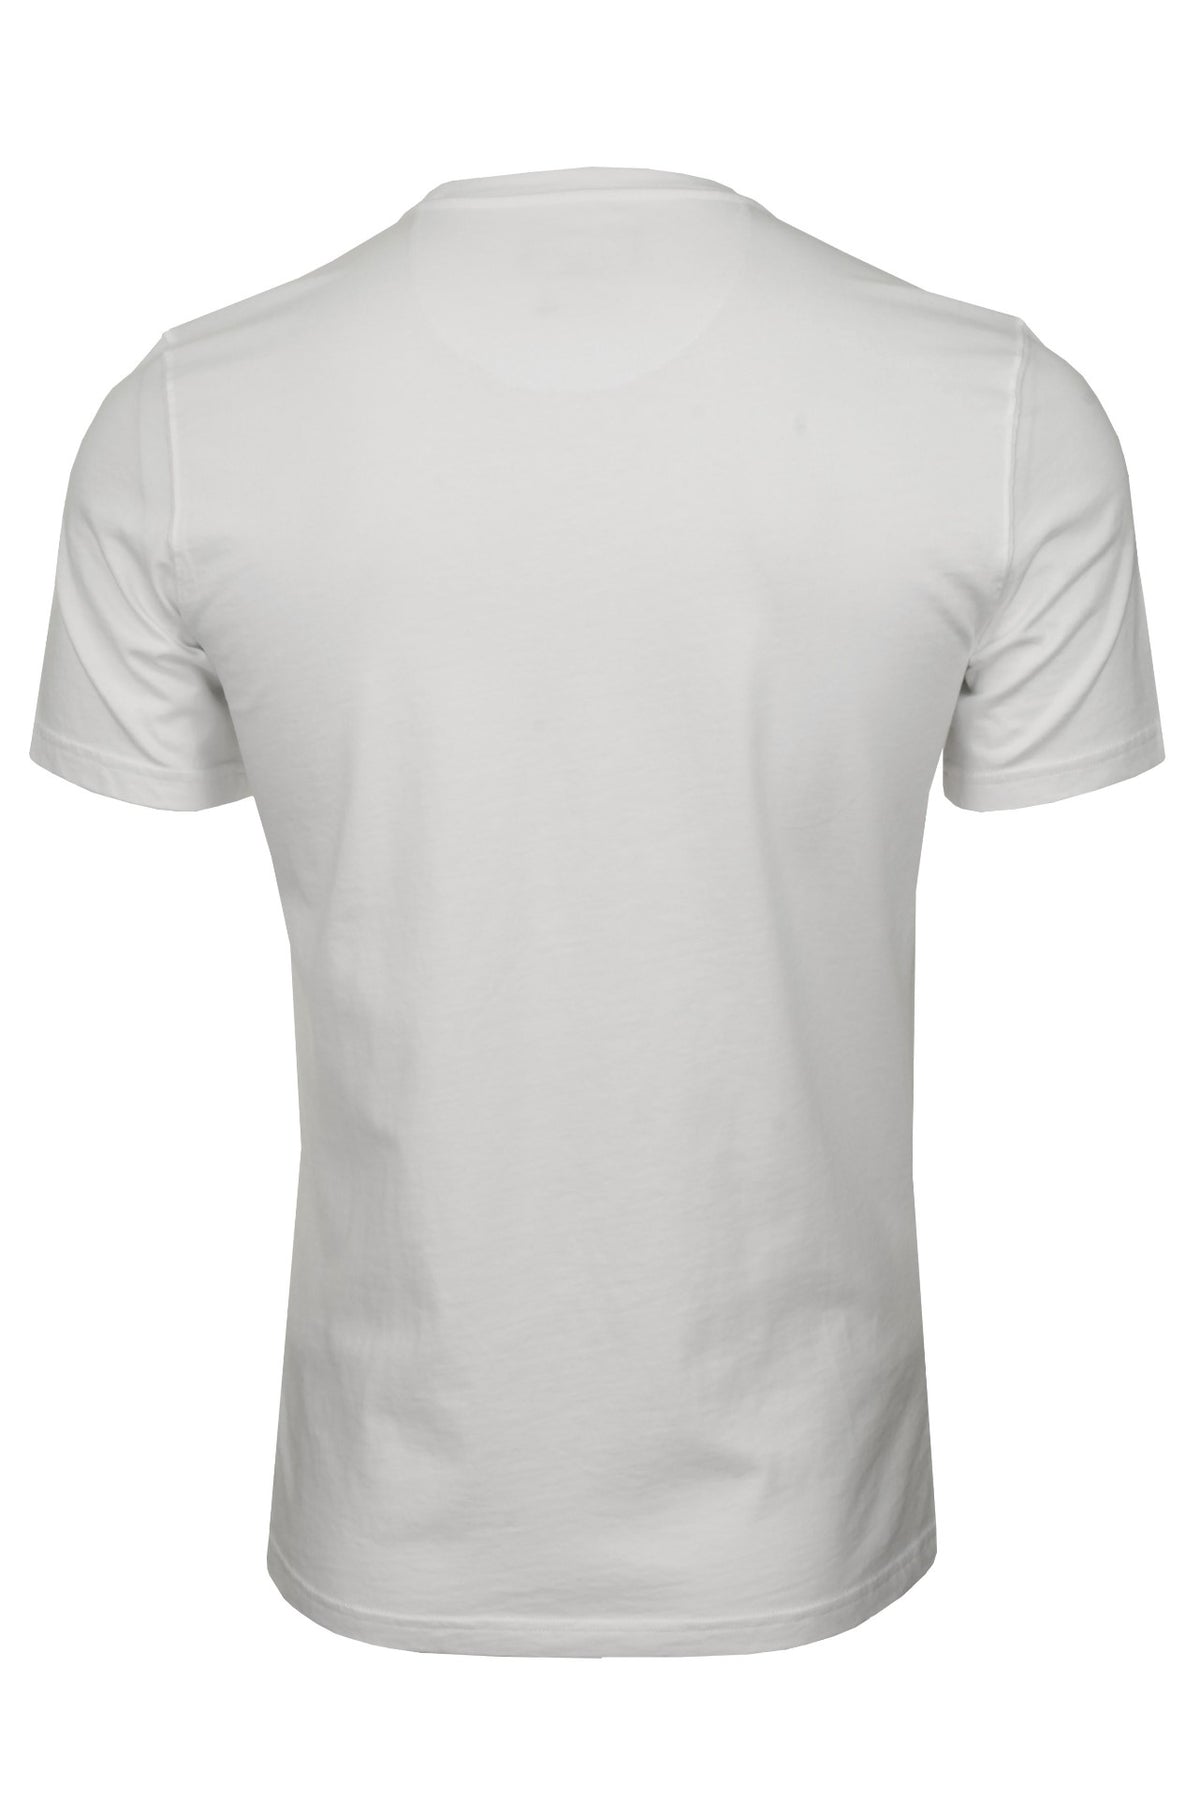 Barbour Men's Sports T-Shirt - Short Sleeved, 03, Mts0331, White